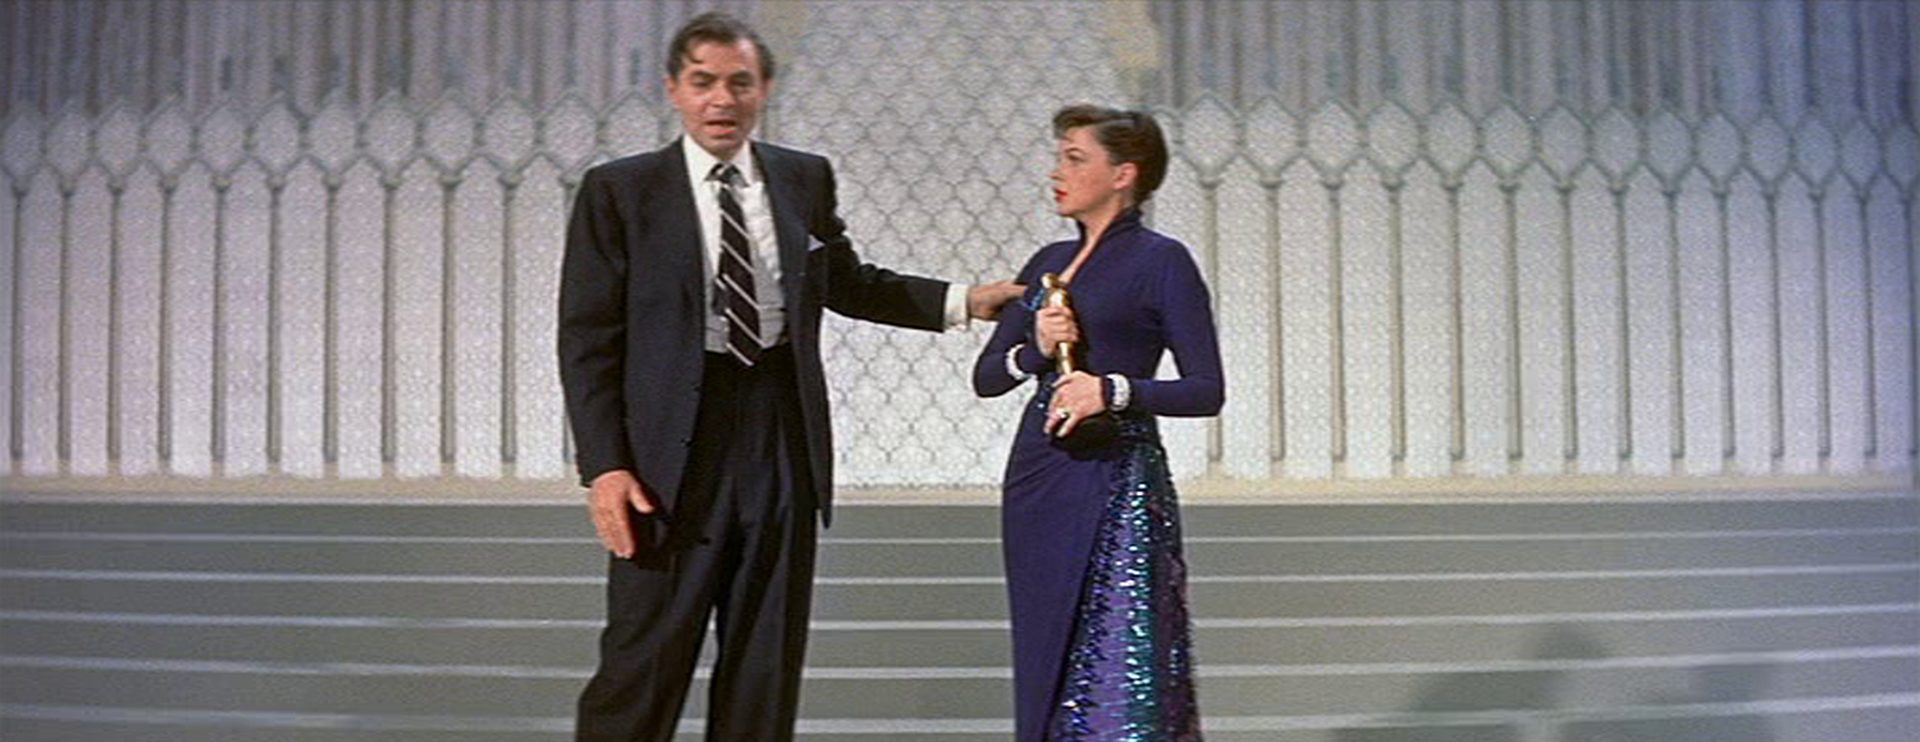 James Mason als Ex-Hollywoodstar Norman Maine betrunken auf der glamourösen Bühne der Academy Awards im Beisein seiner just oscarprämierten Ehefrau Esther Blodgett, gespielt von Judy Garland.